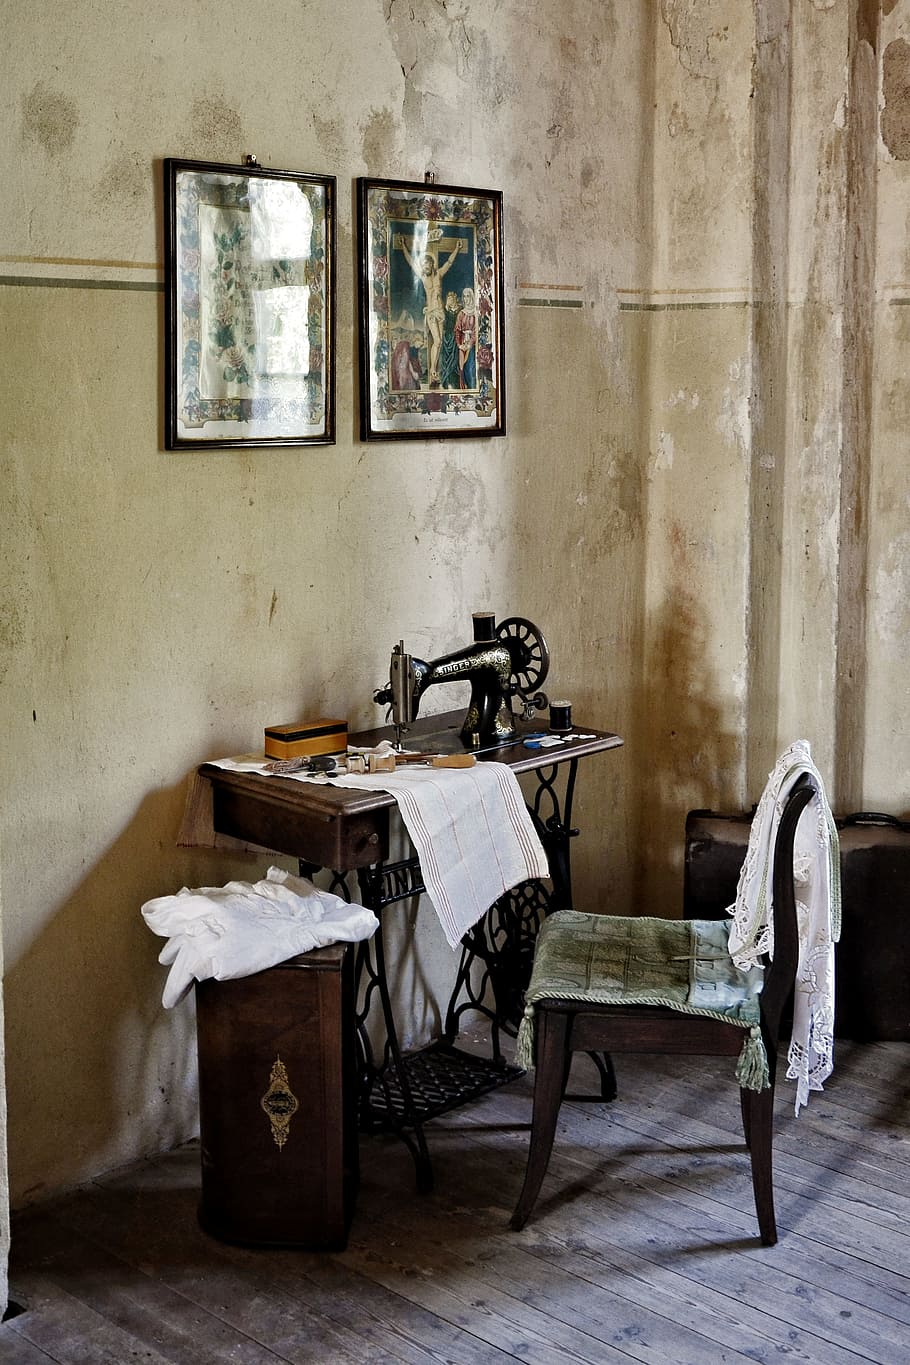 Máquina de costura, cadeira, imagens, velho, historicamente, vintage, dentro de casa, ausência, antiquado, história